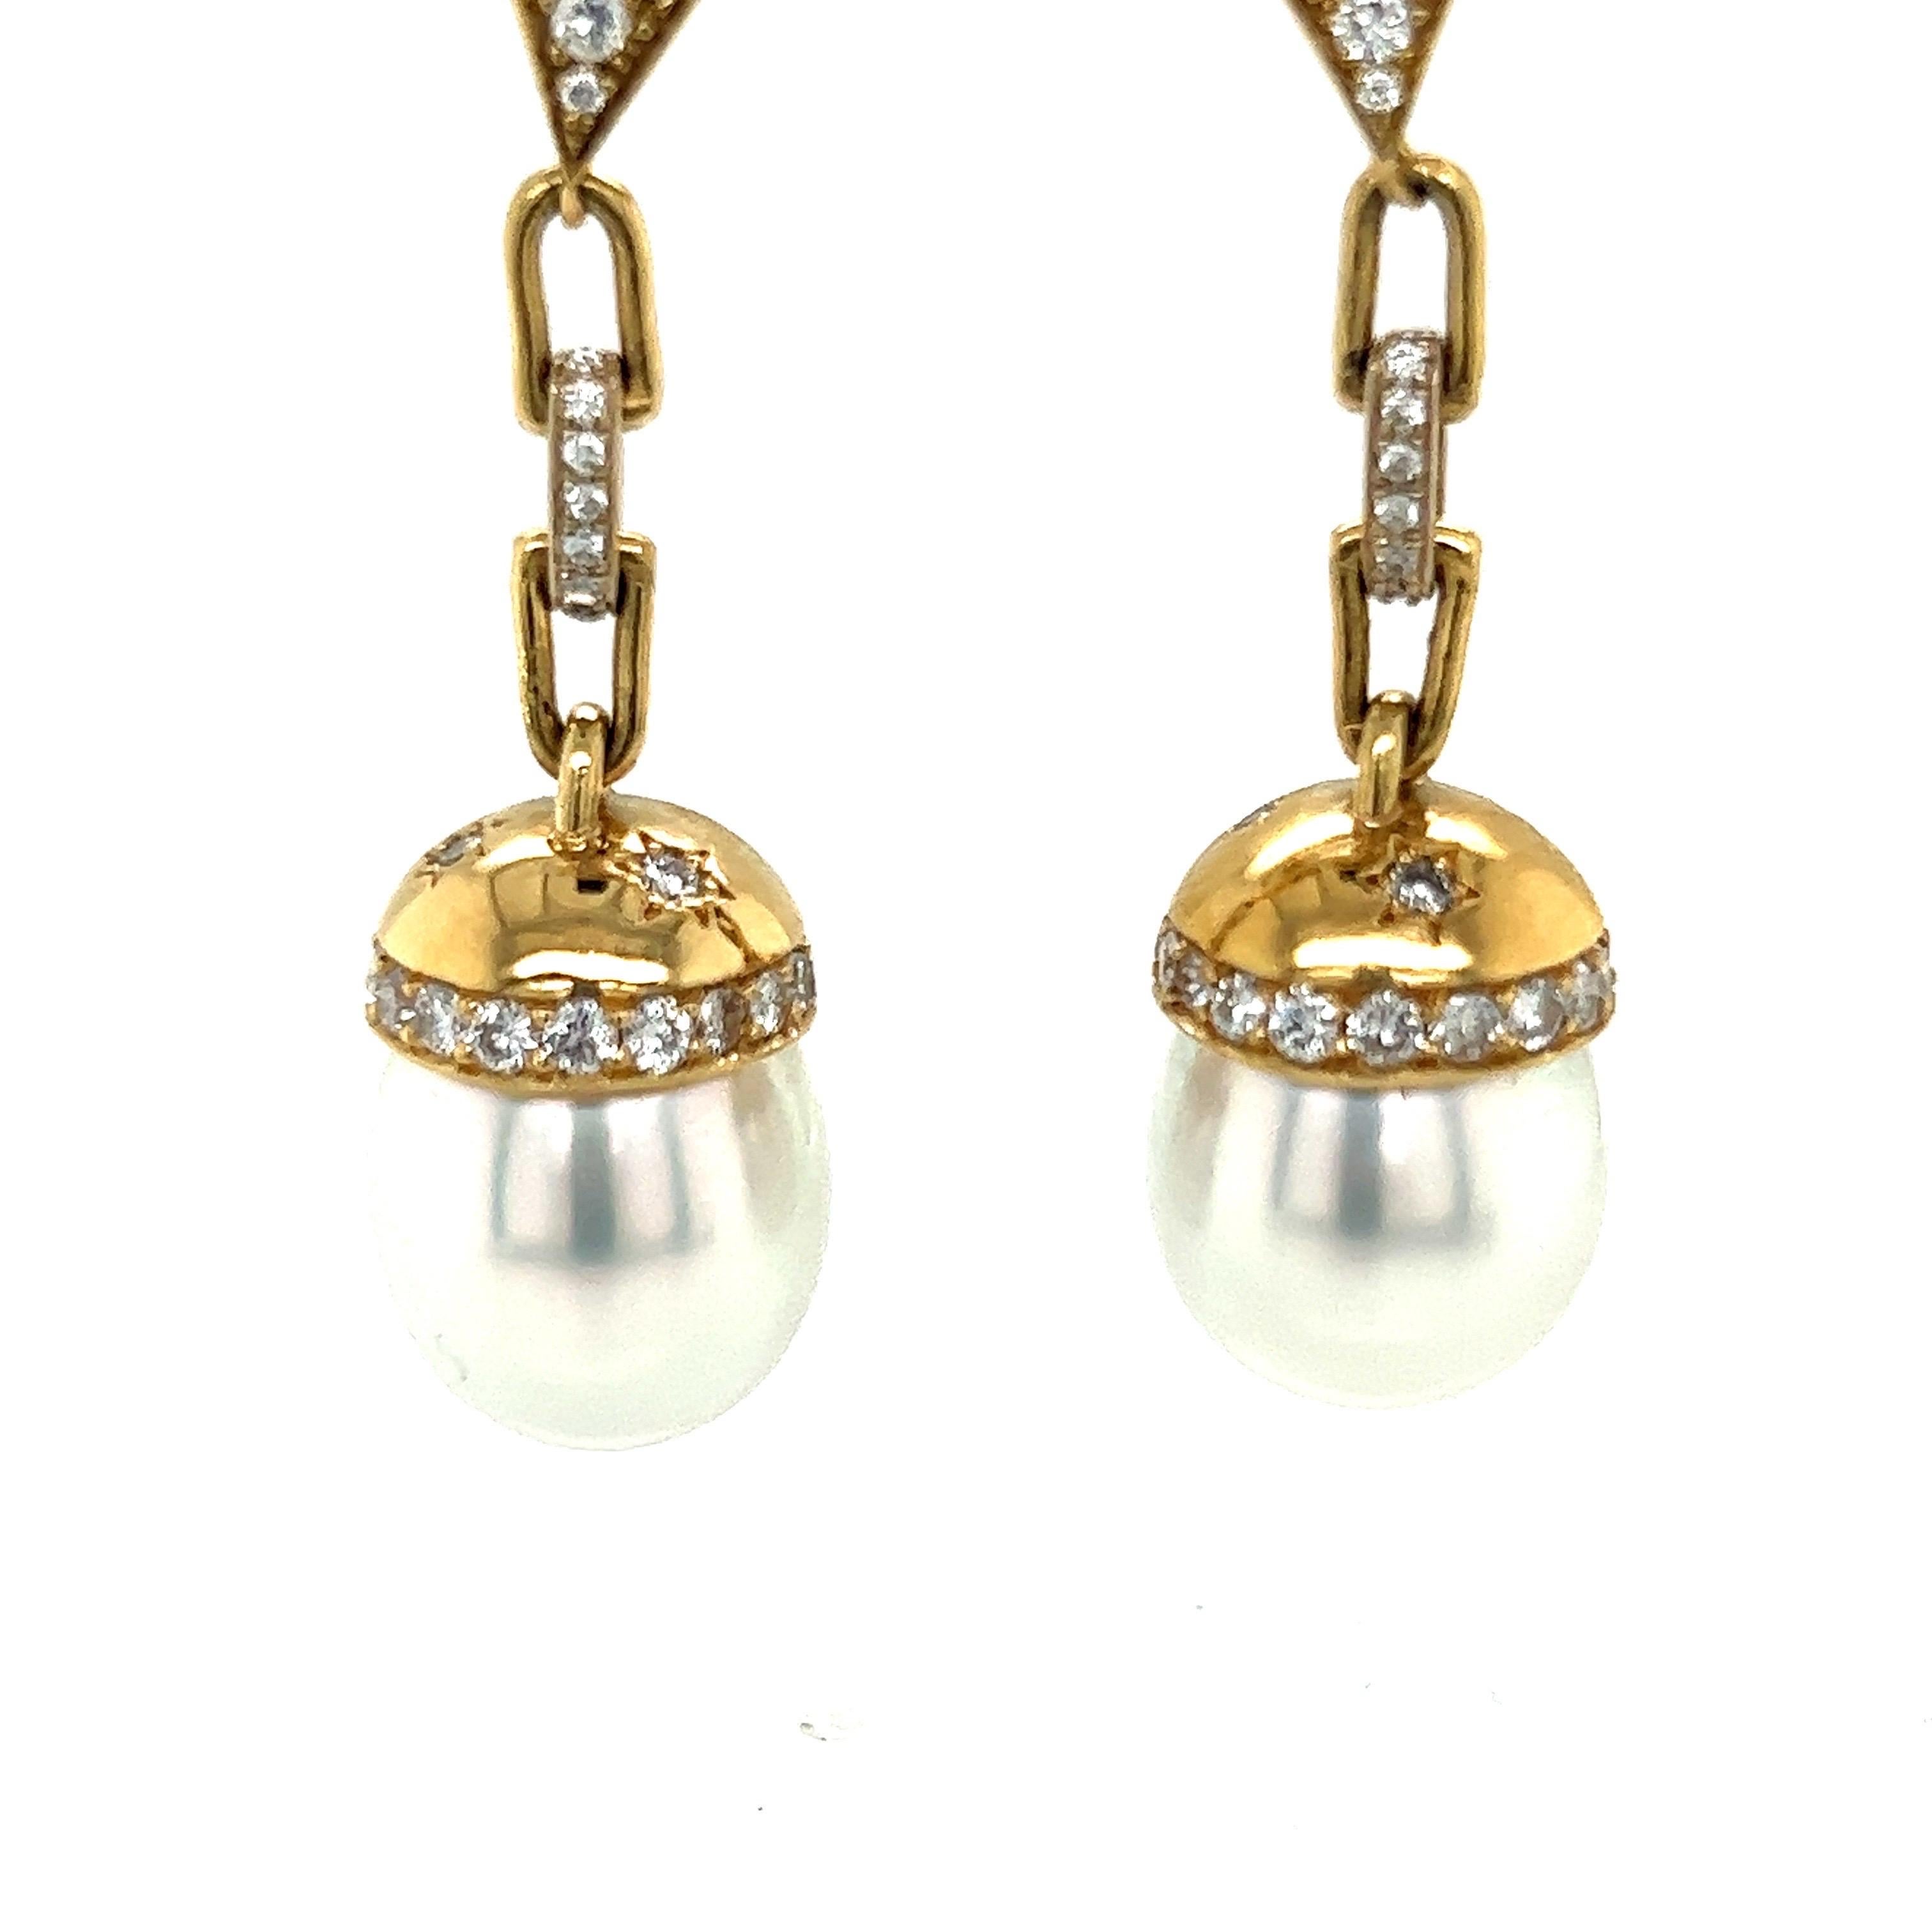 Weiße Südseeperlen-Ohrringe in 18k
Gelbgold mit weißen Diamanten

Gesamtgewicht der Diamanten ca. 1.88ct. 
Farbe G-H, Reinheit VS-2/SI-1

51-52 mm lang
